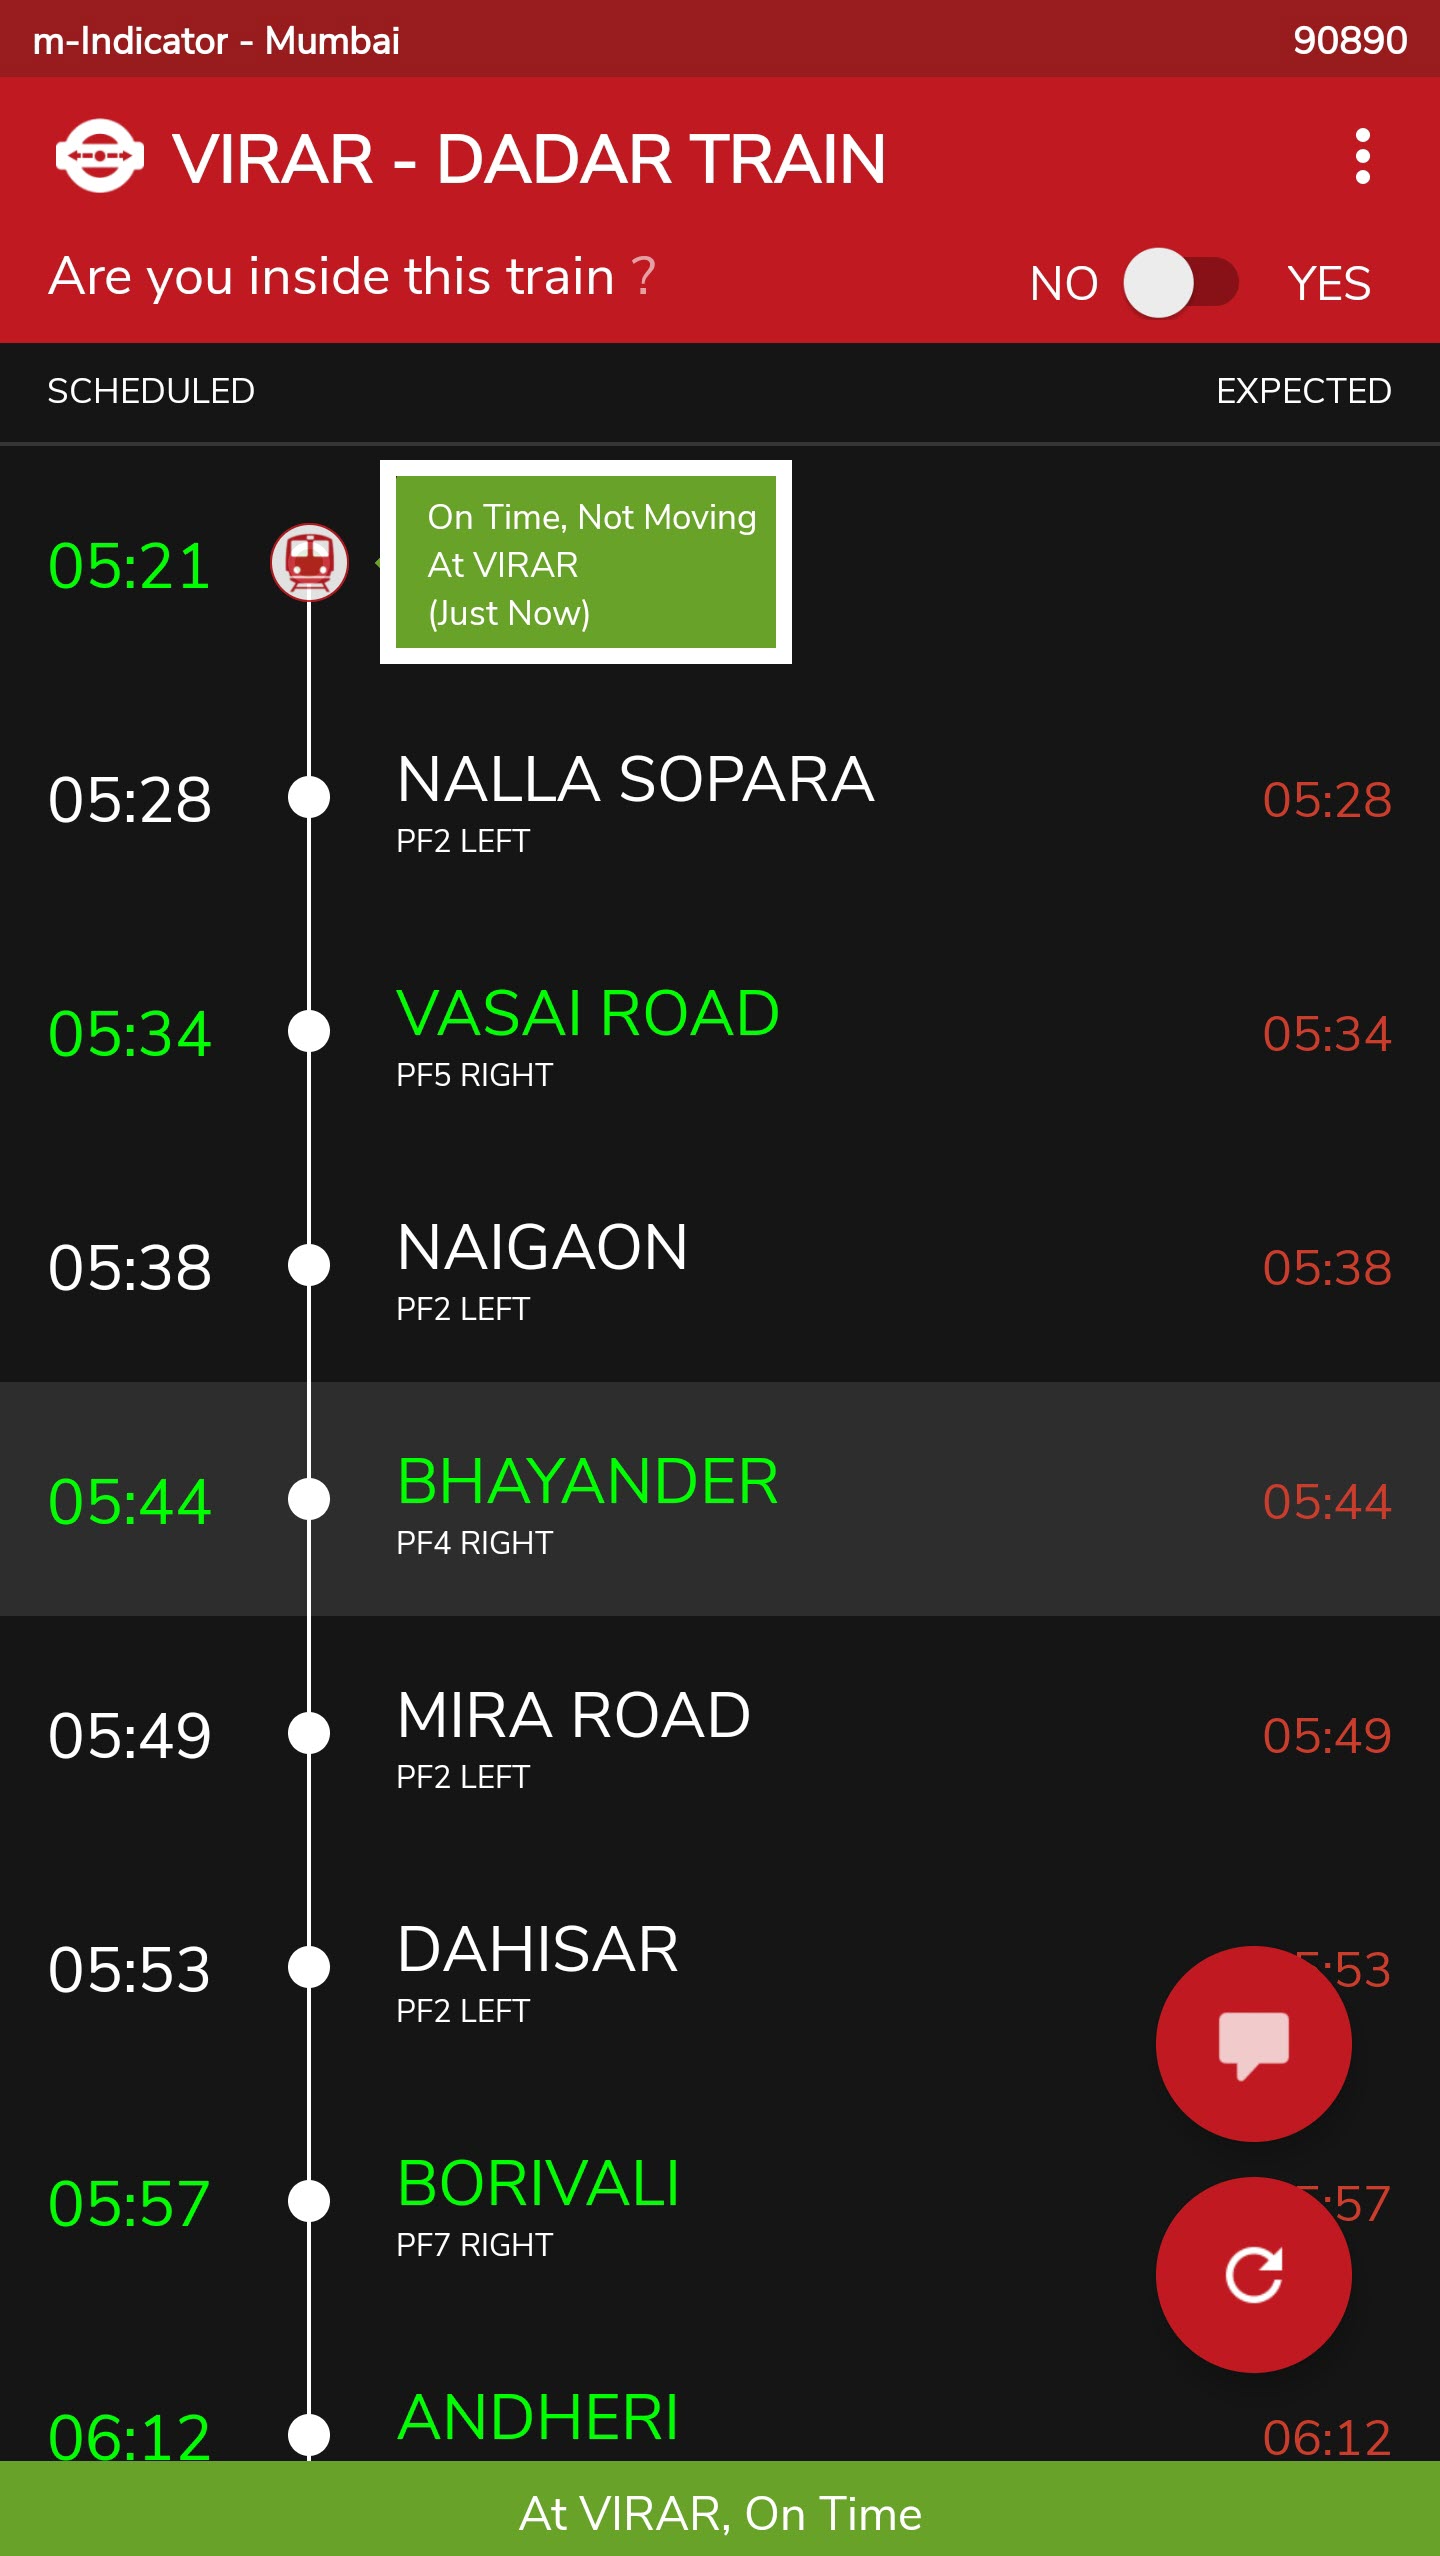 Cara Langsung melacak kereta lokal Mumbai menggunakan m-Indicator 3